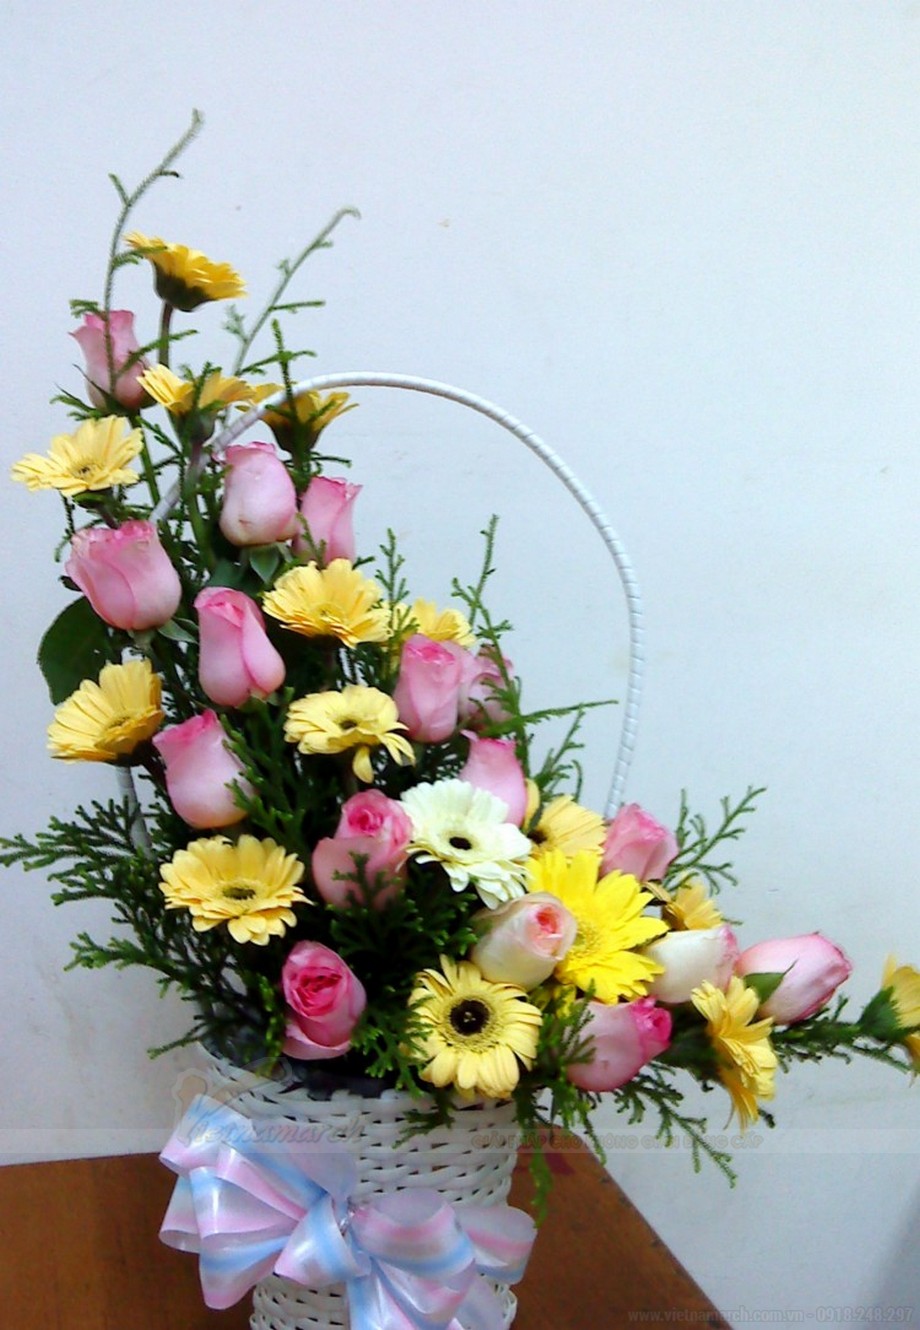 Một số loại hoa cắm bàn thờ ngày tết rước lộc vào nhà! > Một số loại hoa cắm bàn thờ ngày tết rước lộc vào nhà!